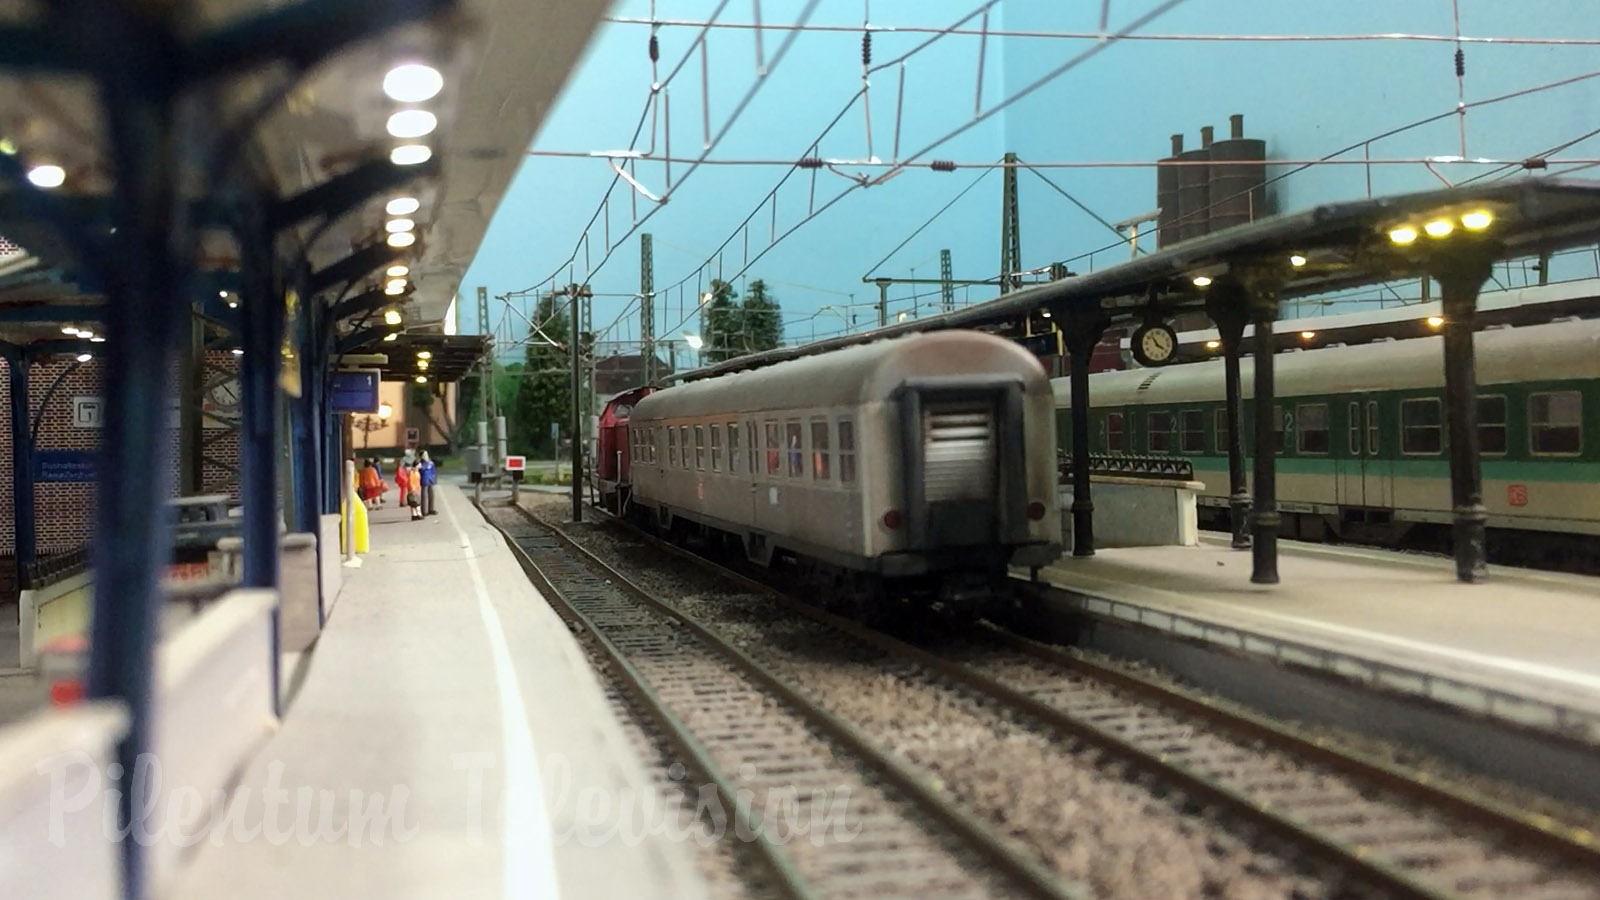 Modeltog fra det nationale jernbaneselskab i Tyskland i skala HO